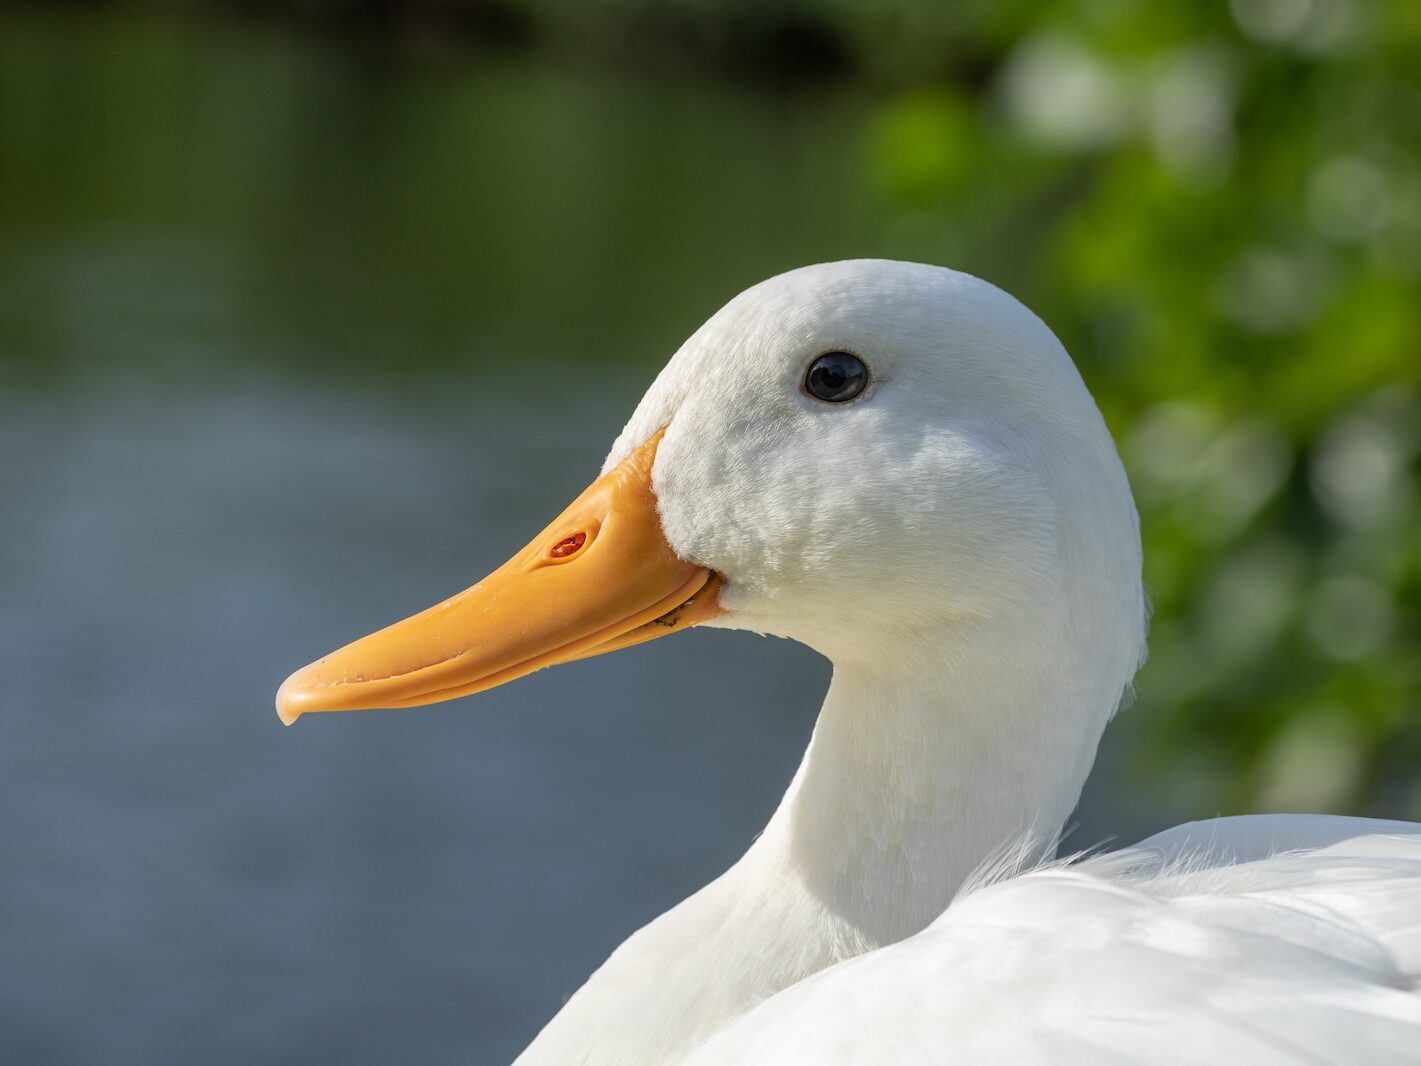 white duck